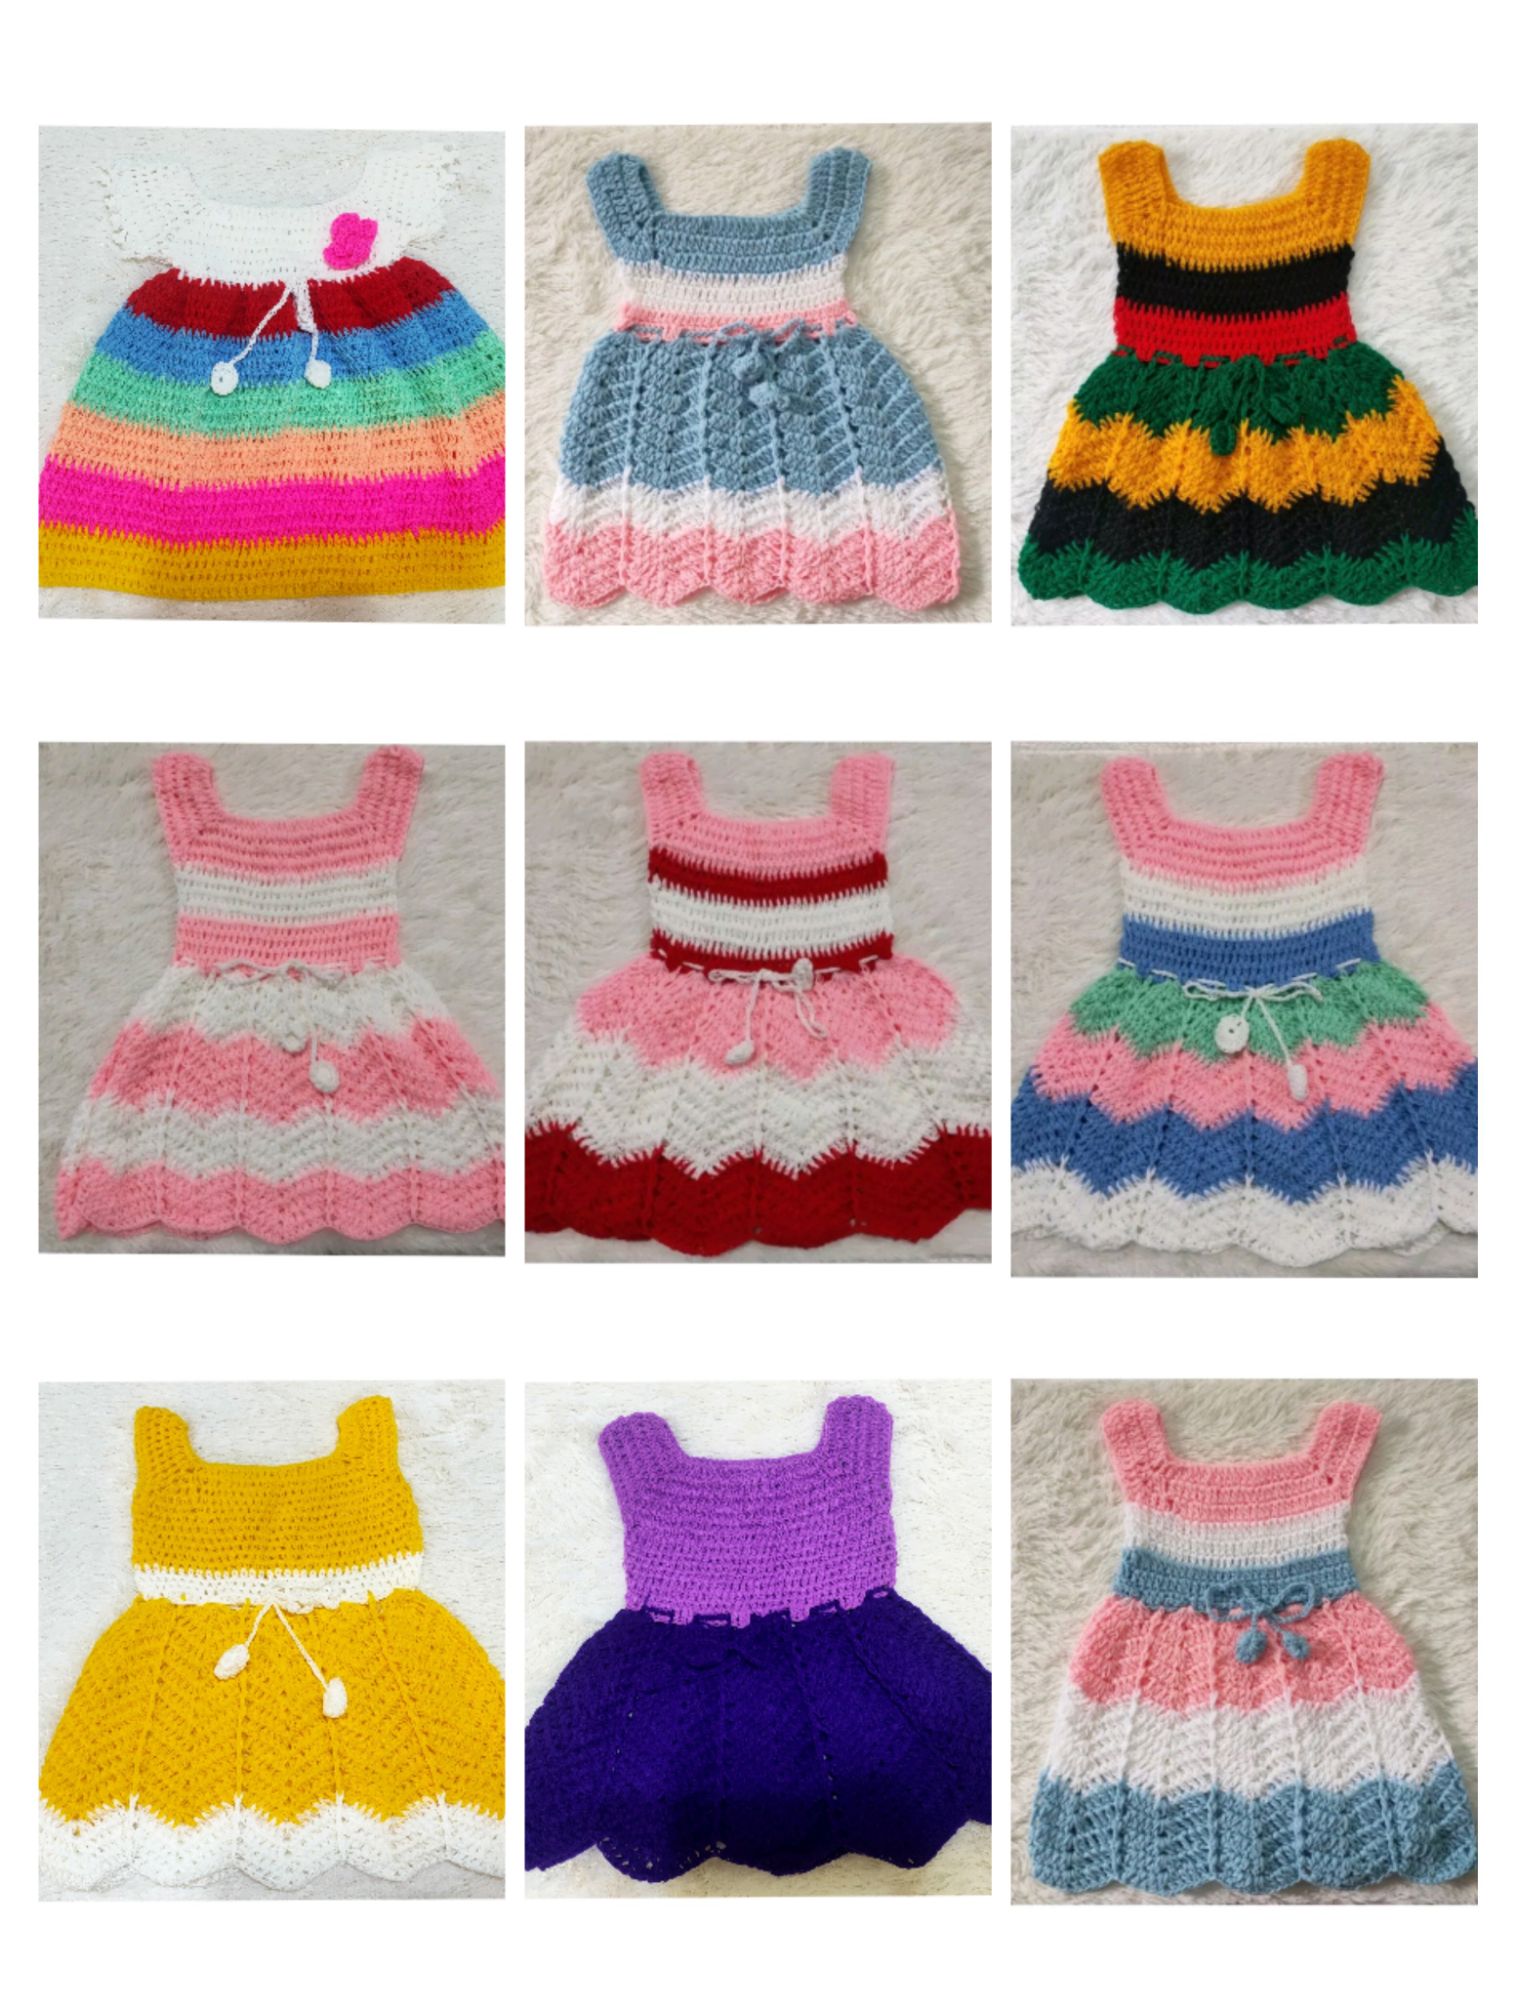 Buy Baby Crochet Dress online